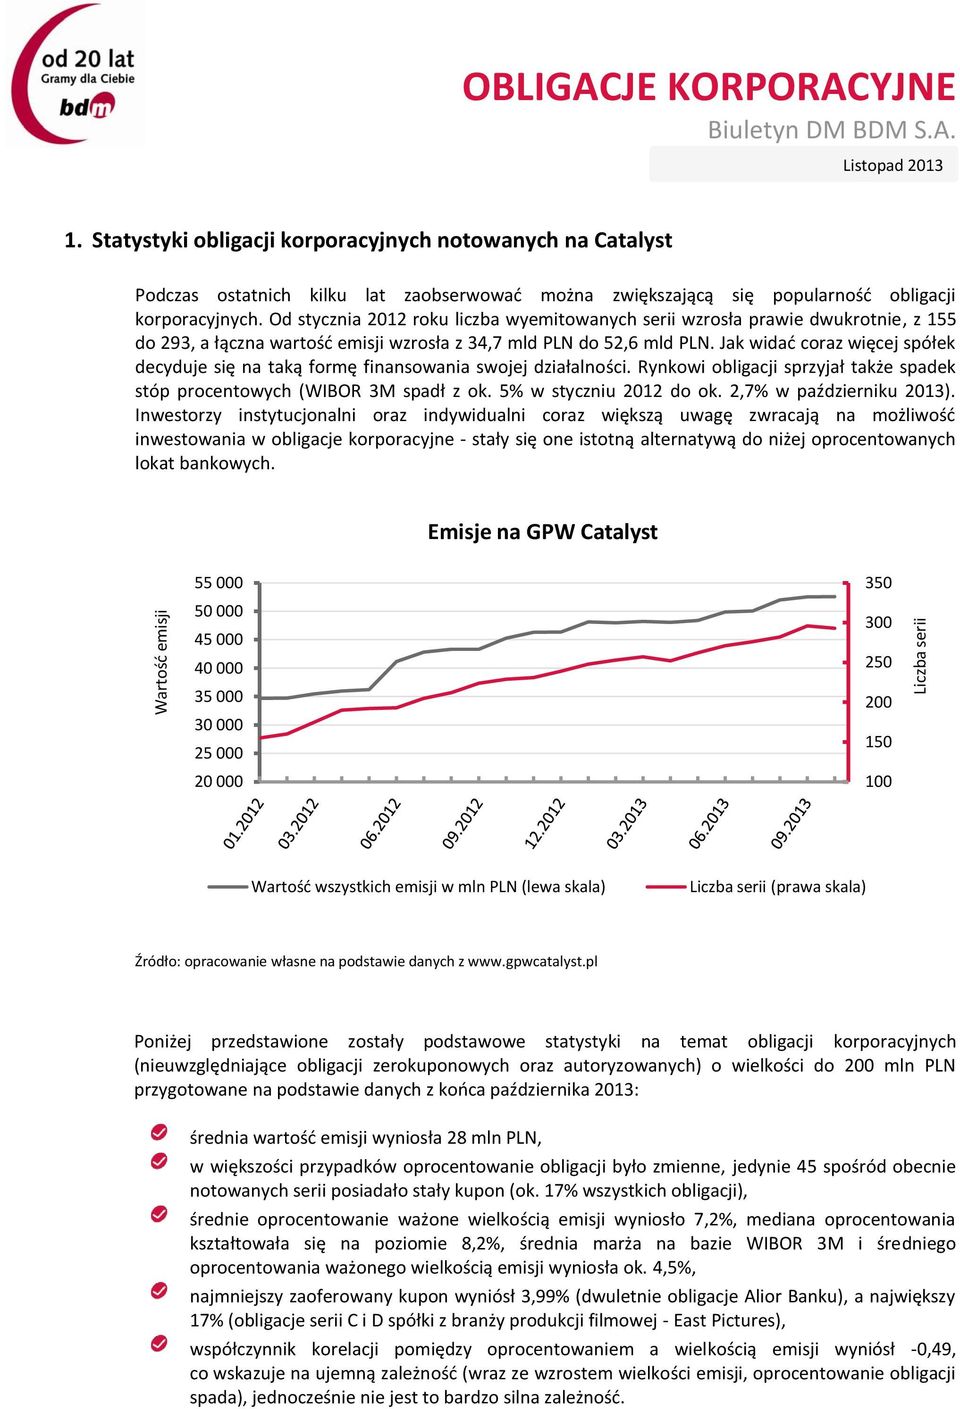 Od stycznia 2012 roku liczba wyemitowanych serii wzrosła prawie dwukrotnie, z 155 do 293, a łączna wartość emisji wzrosła z 34,7 mld PLN do 52,6 mld PLN.